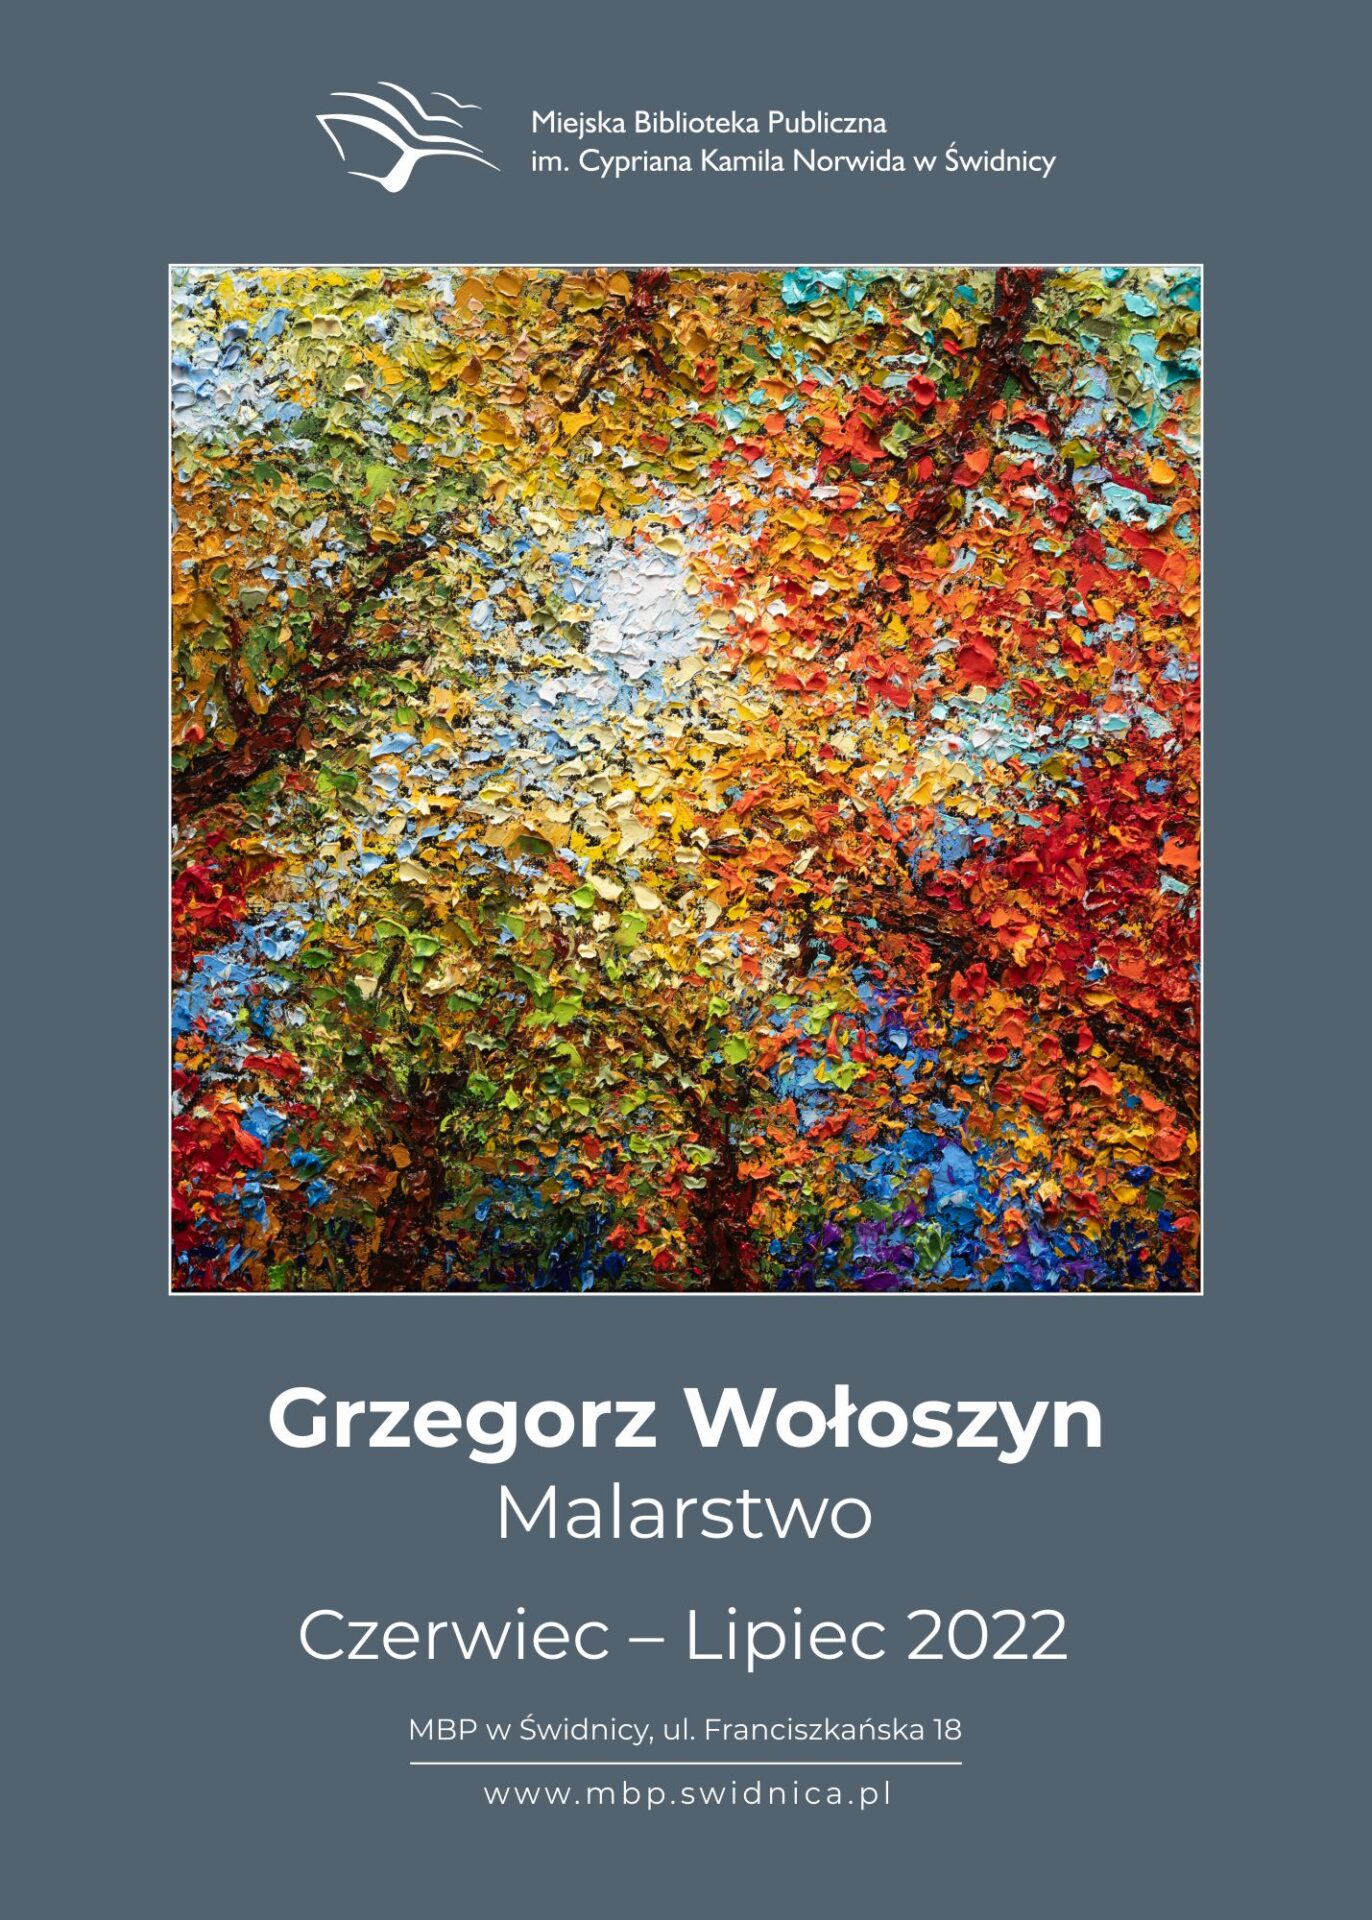 Plakat reklamujący wystawę Grzegorza Wołoszyna